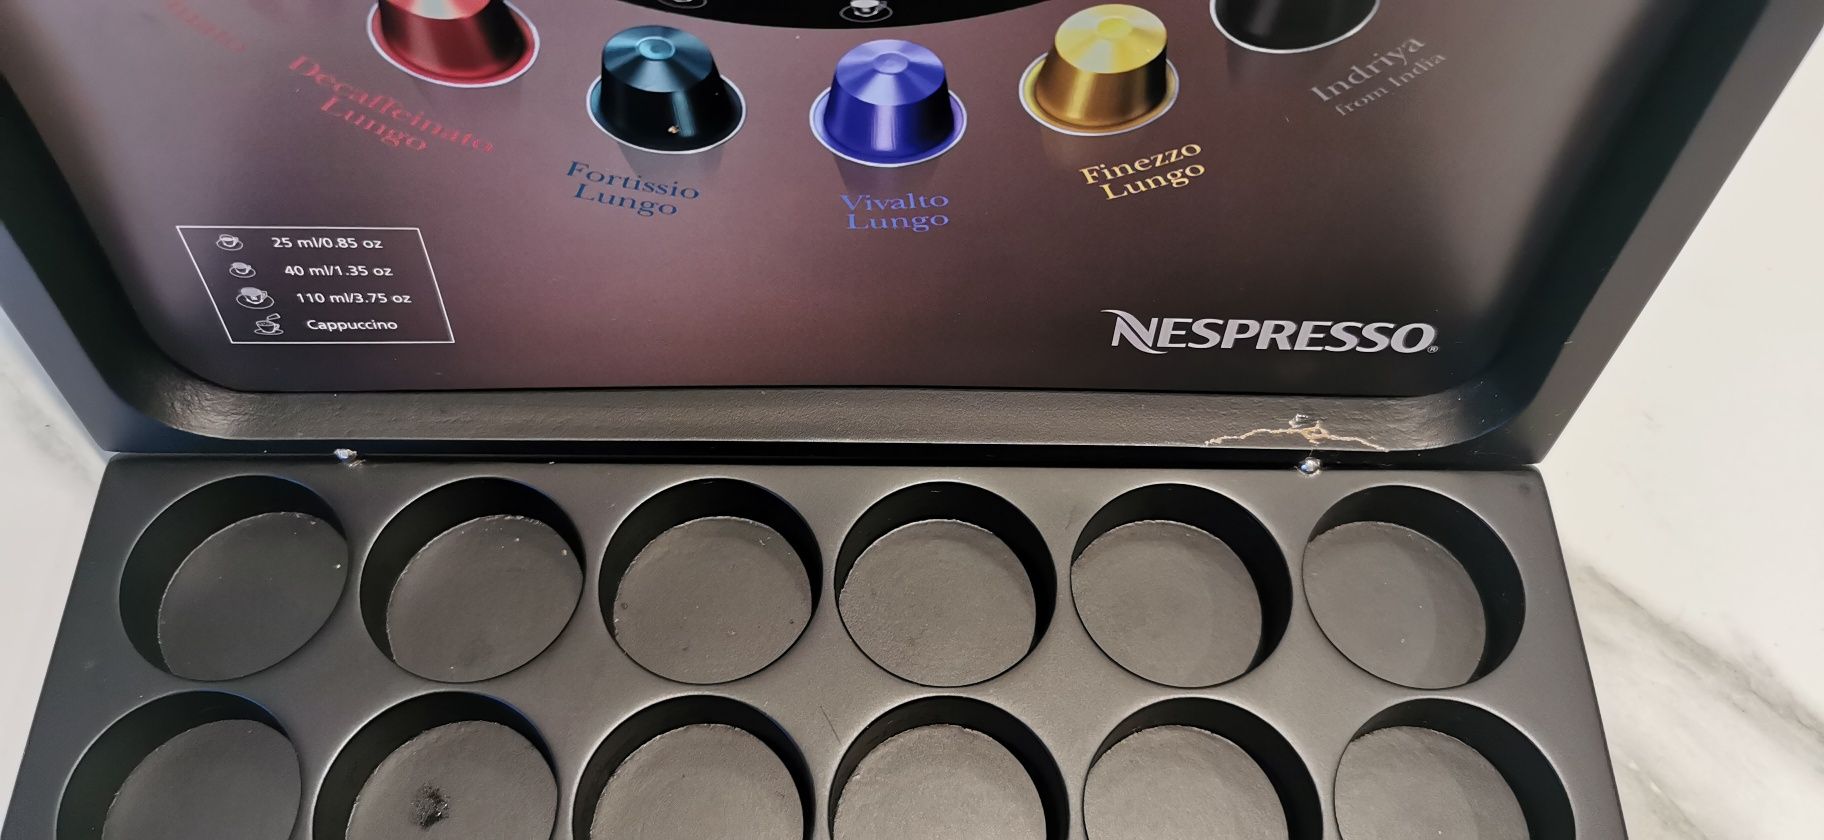 Caixa de capsulas Nespresso